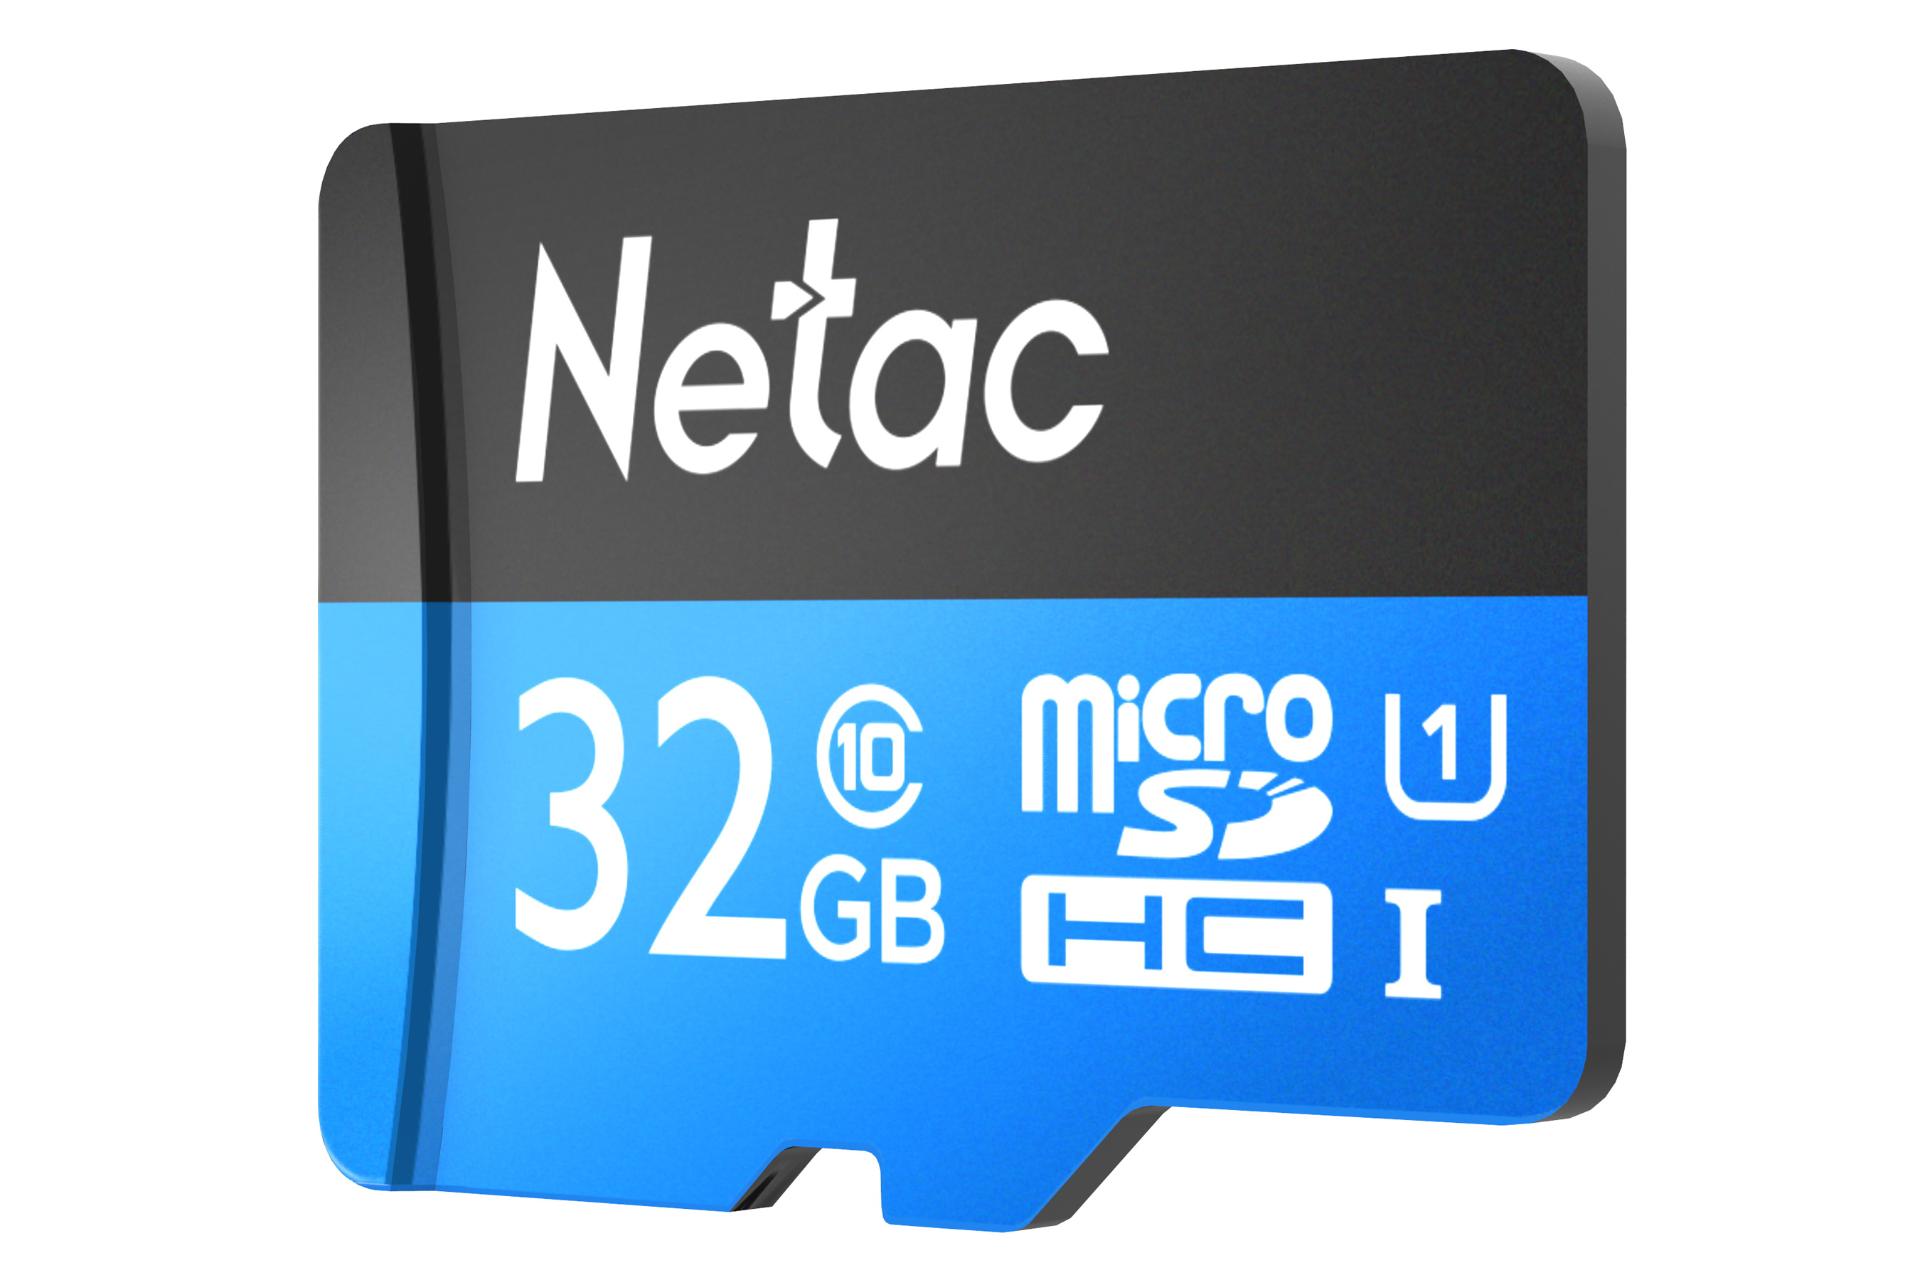 نمای راست کارت حافظه نتاک microSDXC ظرفیت 32 گیگابایت